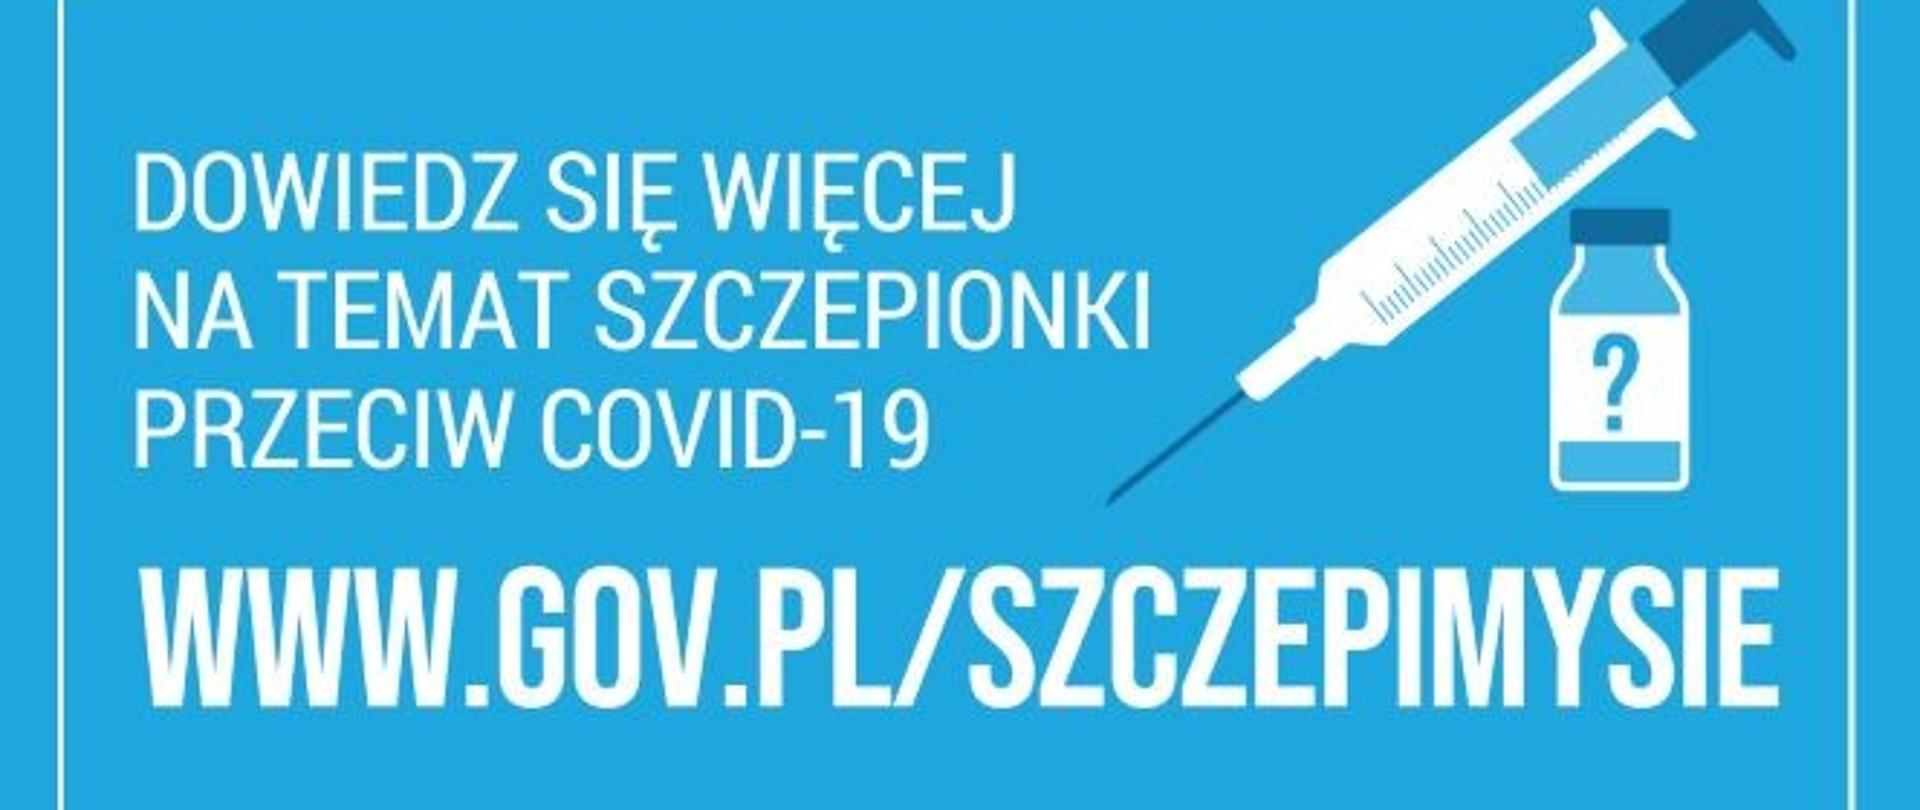 Dowiedz się więcej na temat szczepionki przeciw COVID-19 na www.govl.pl/szczepimysie